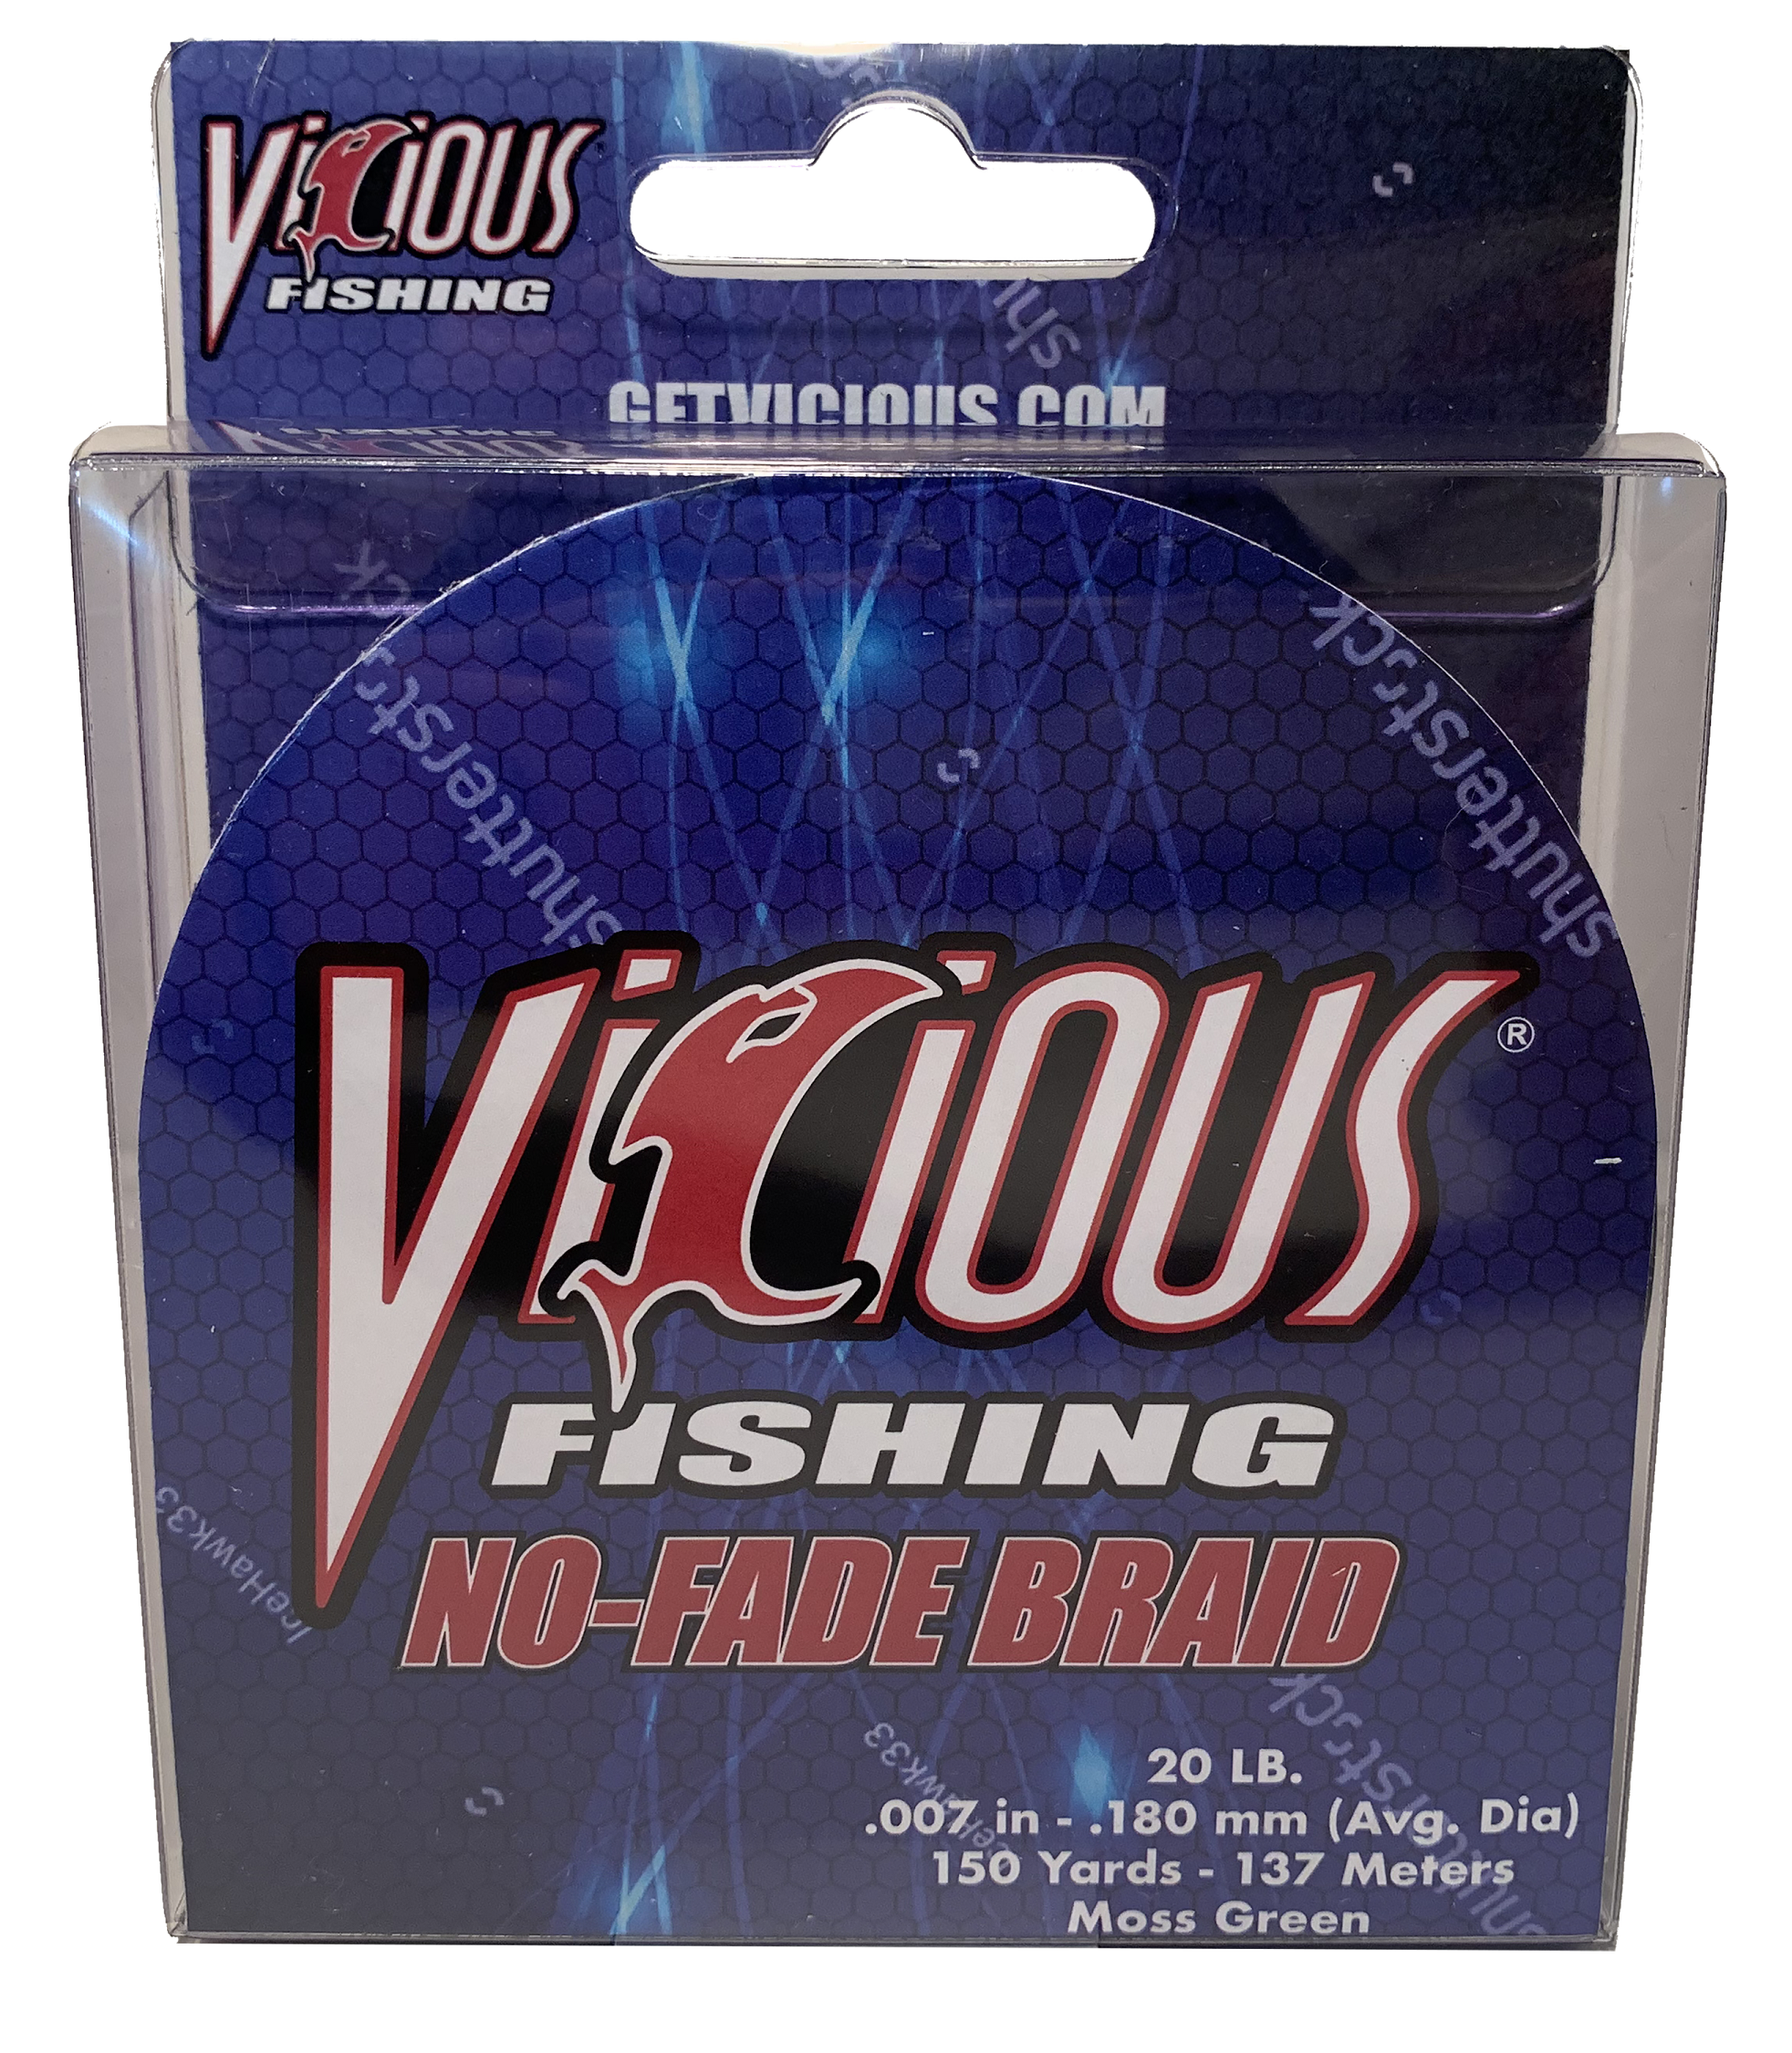 Gear Review: Vicious Fishing No Fade Braid - Bassmaster